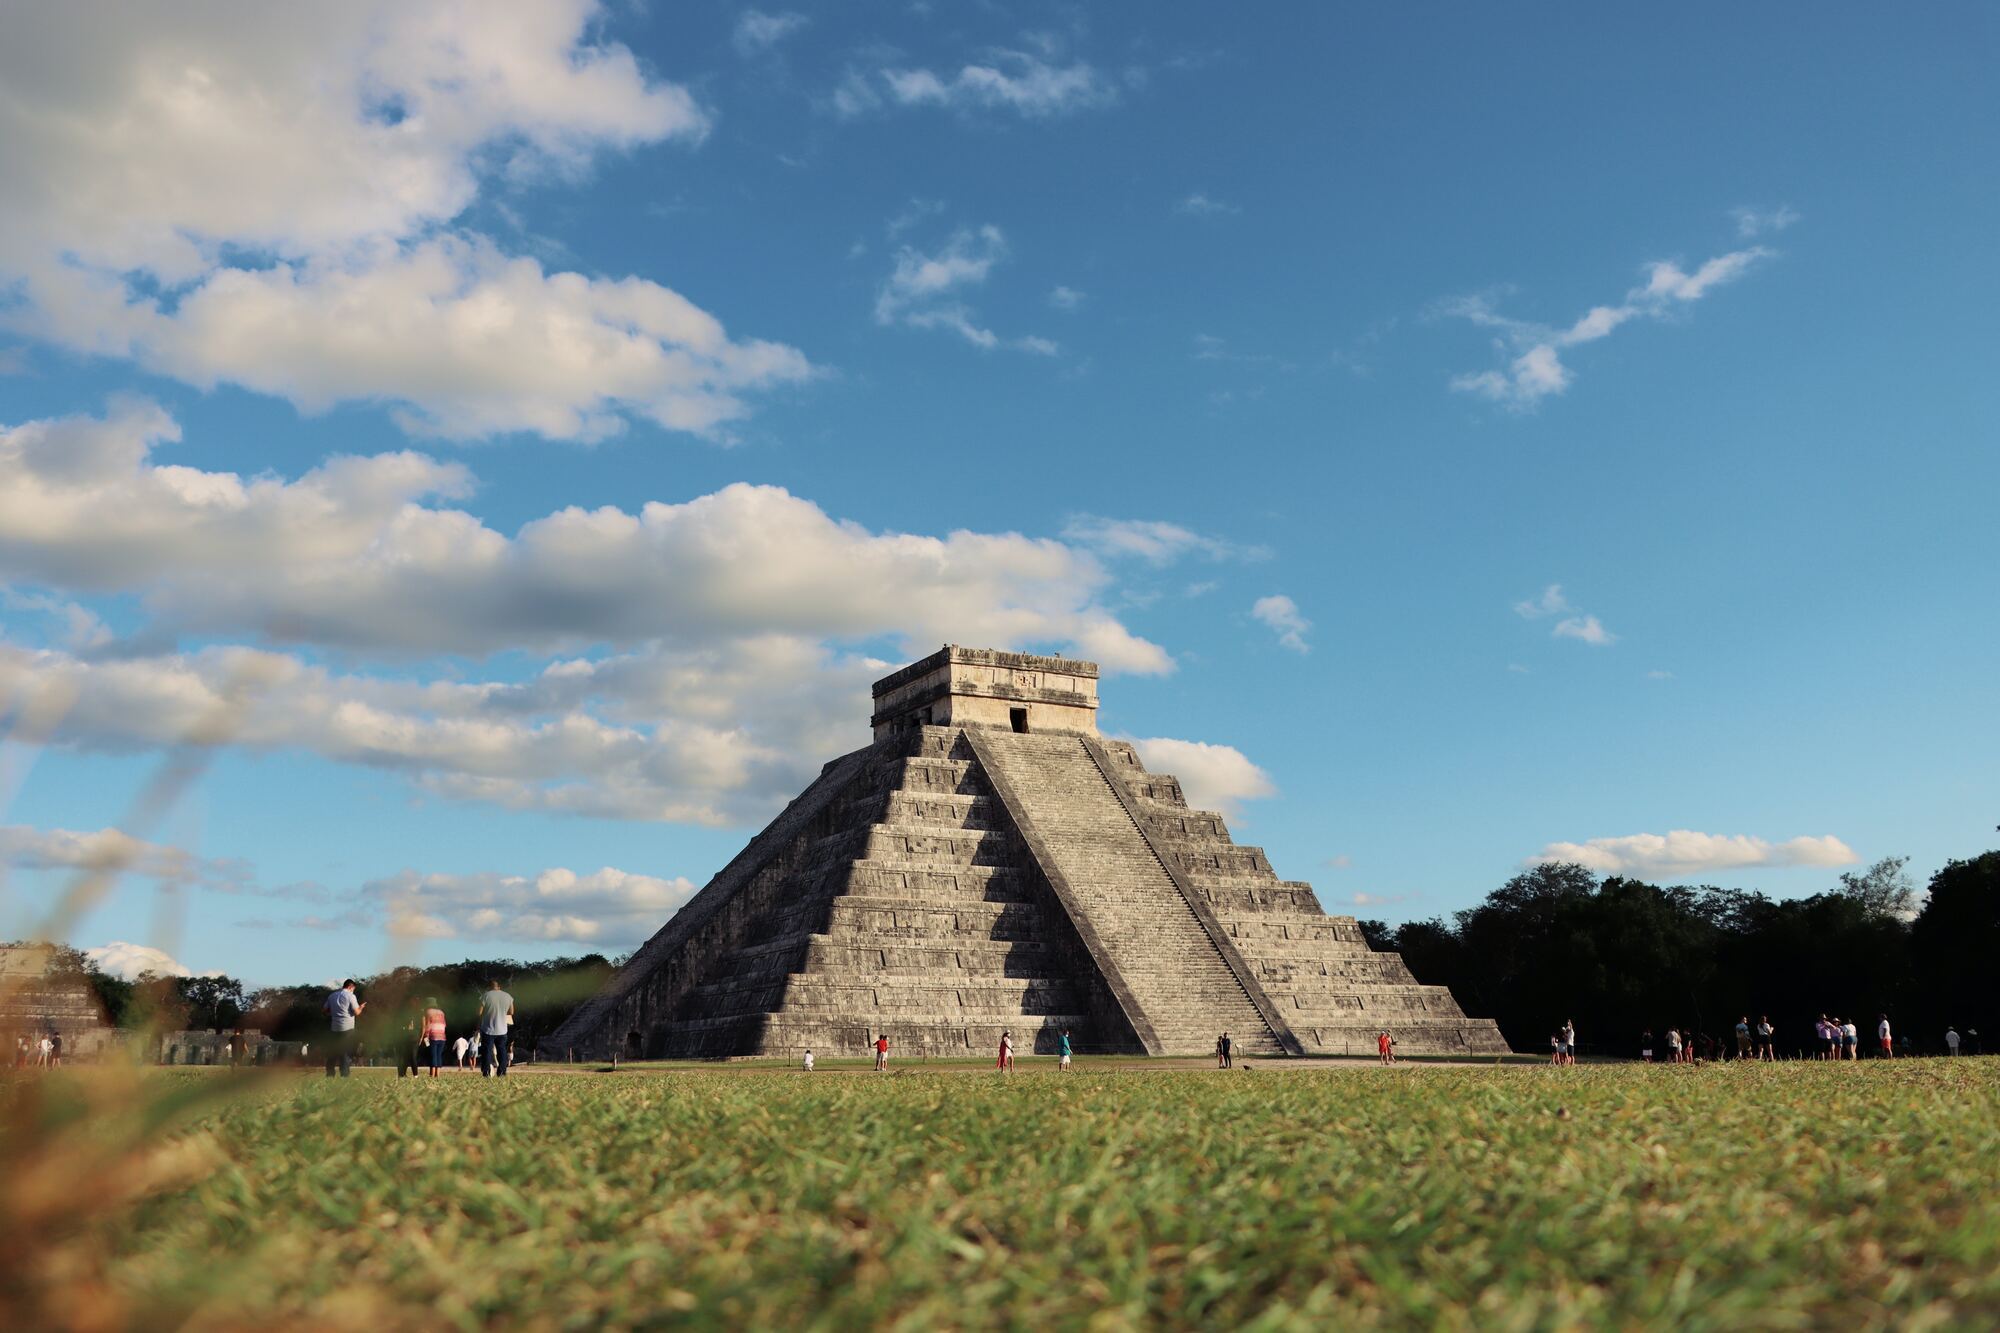 Чичен-Ица: тайны индейской пирамиды, которые до сих пор шокируют человечество